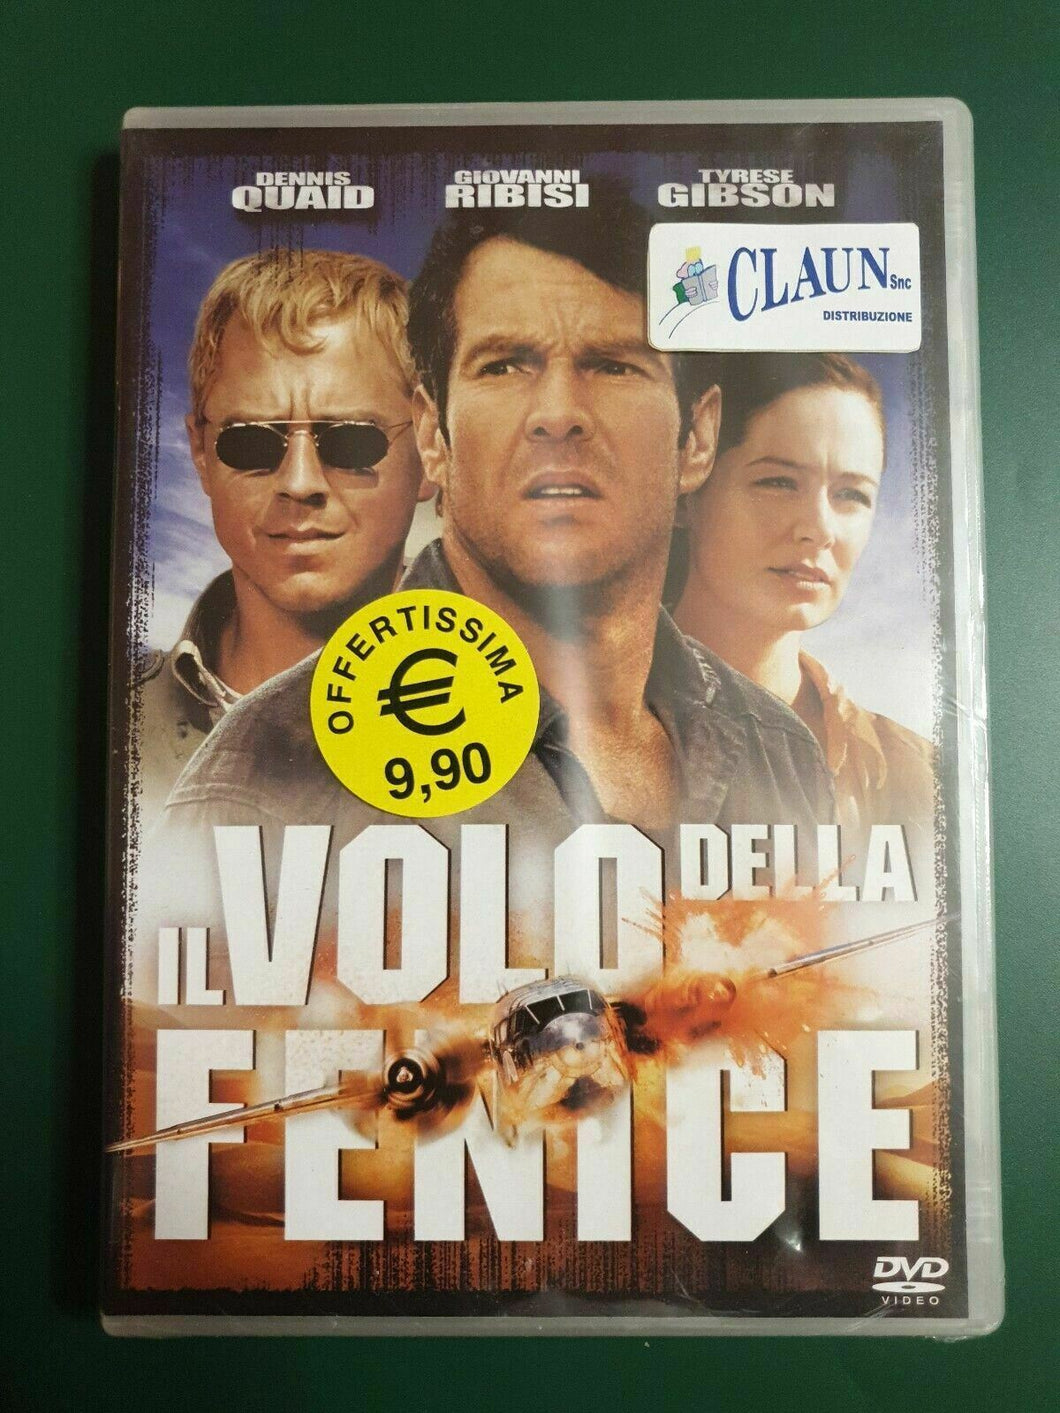 IL VOLO DELLA FENICE DVD con Dennis Quaid Dvd Nuovo